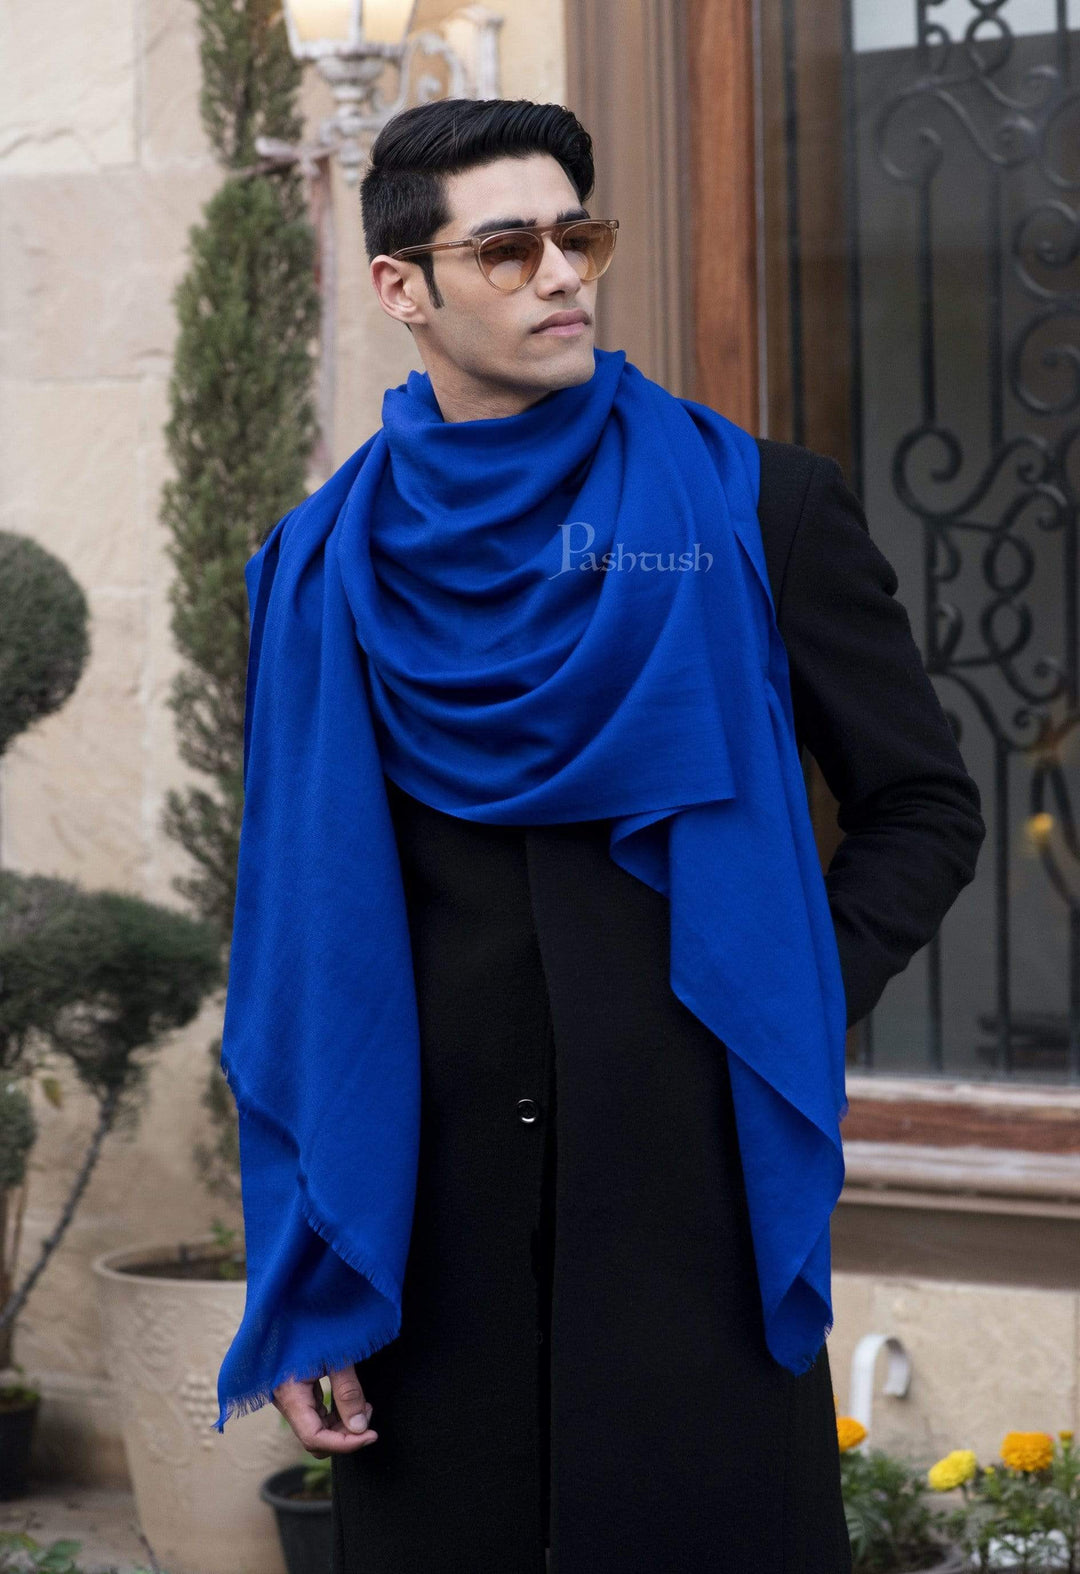 Pashtush India 70x200 Pashtush Mens Cashmere Wool Scarf, Diamond Weave, Azure Blue